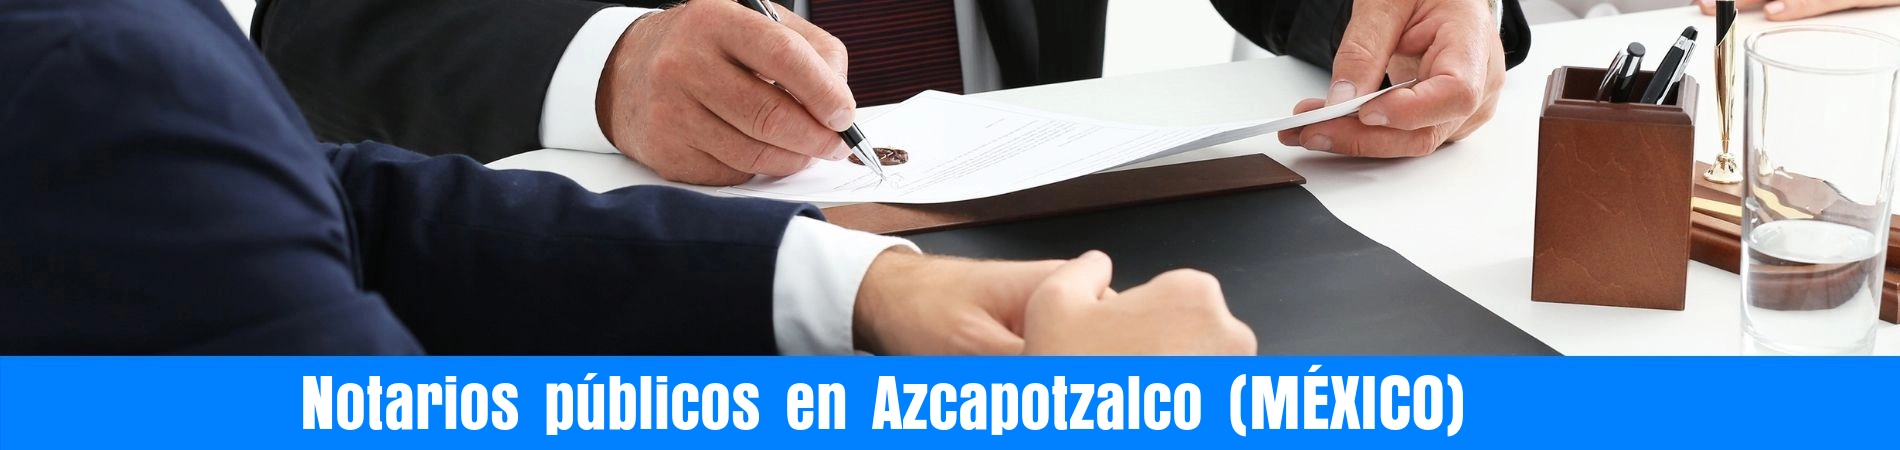 Notarios-públicos-en-Azcapotzalco-mexico